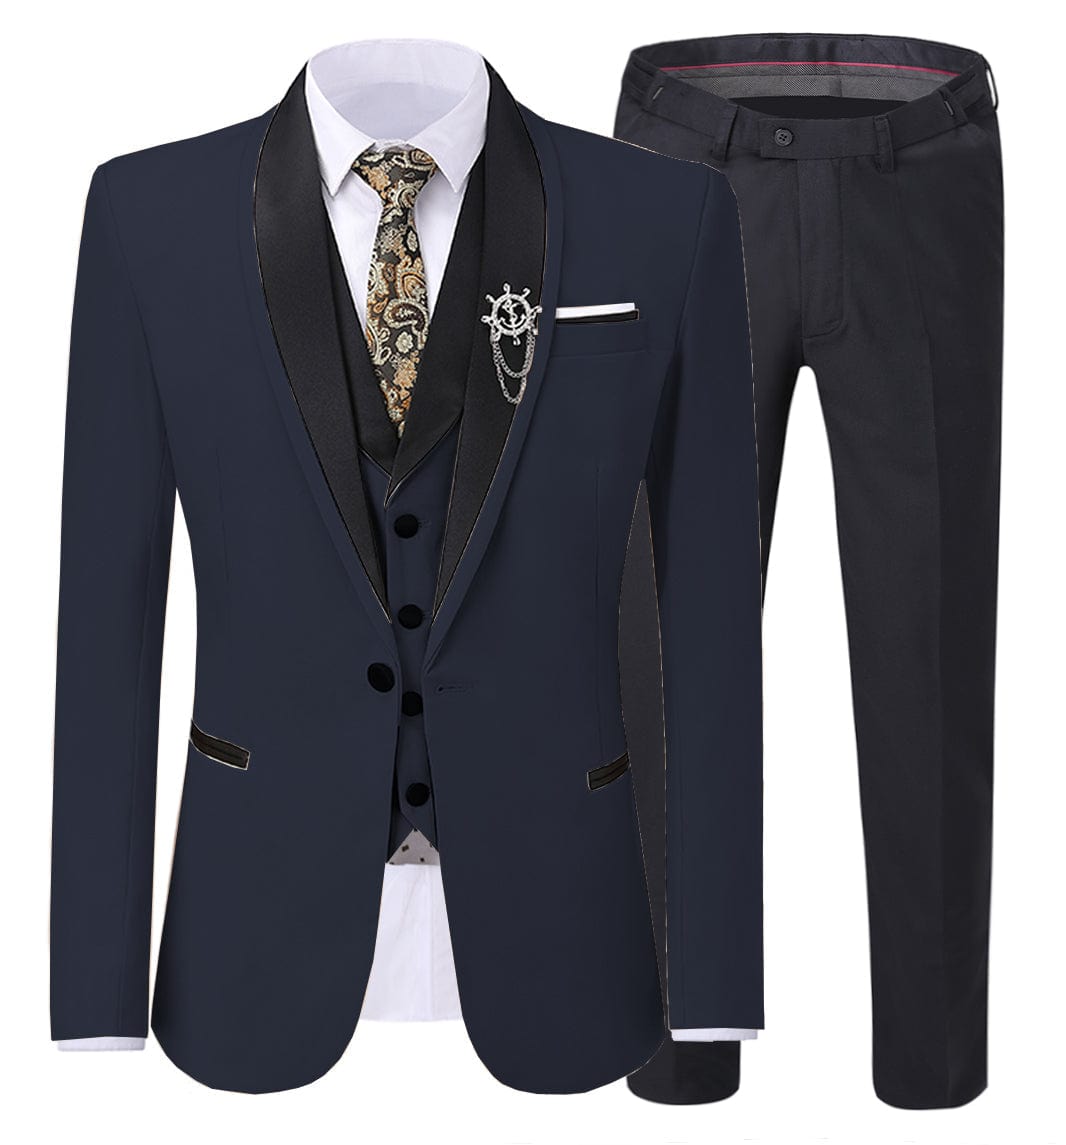 ceehuteey Men's 3 Pieces Formal Suit Flat Notch Lapel Tuxedos (Blazer+vest+Pants)